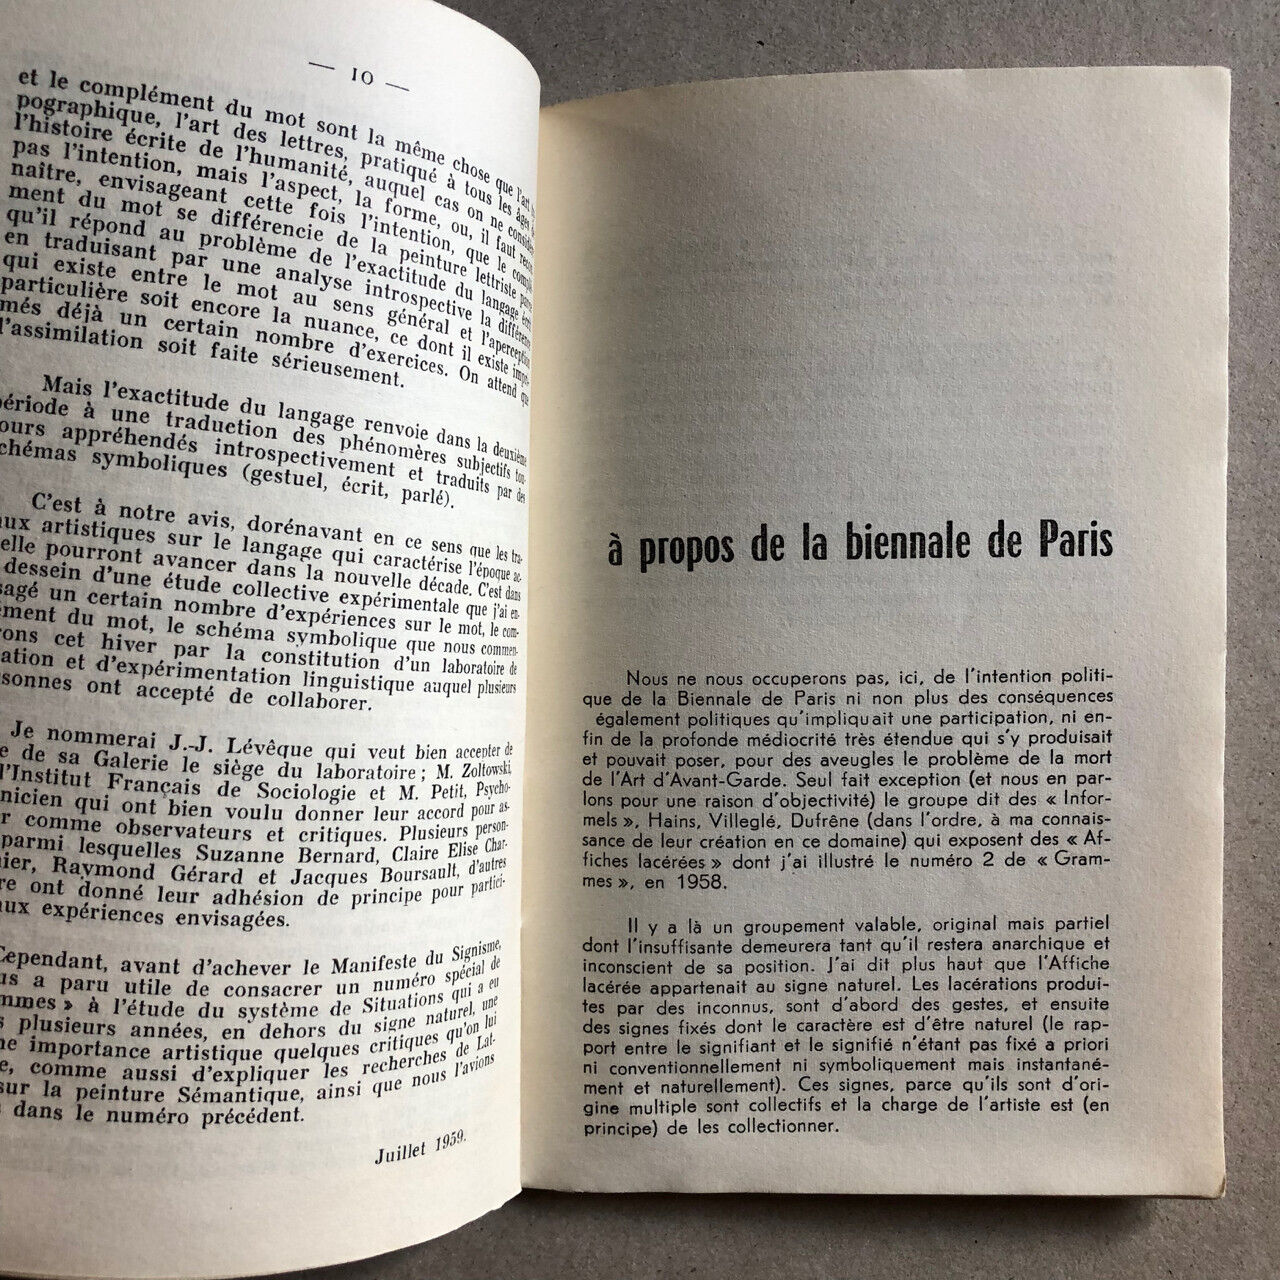 [Robert Estivals] — -Grâmmes — n° 4 — Revue du Groupe Ultra-Lettriste — éo 1959.